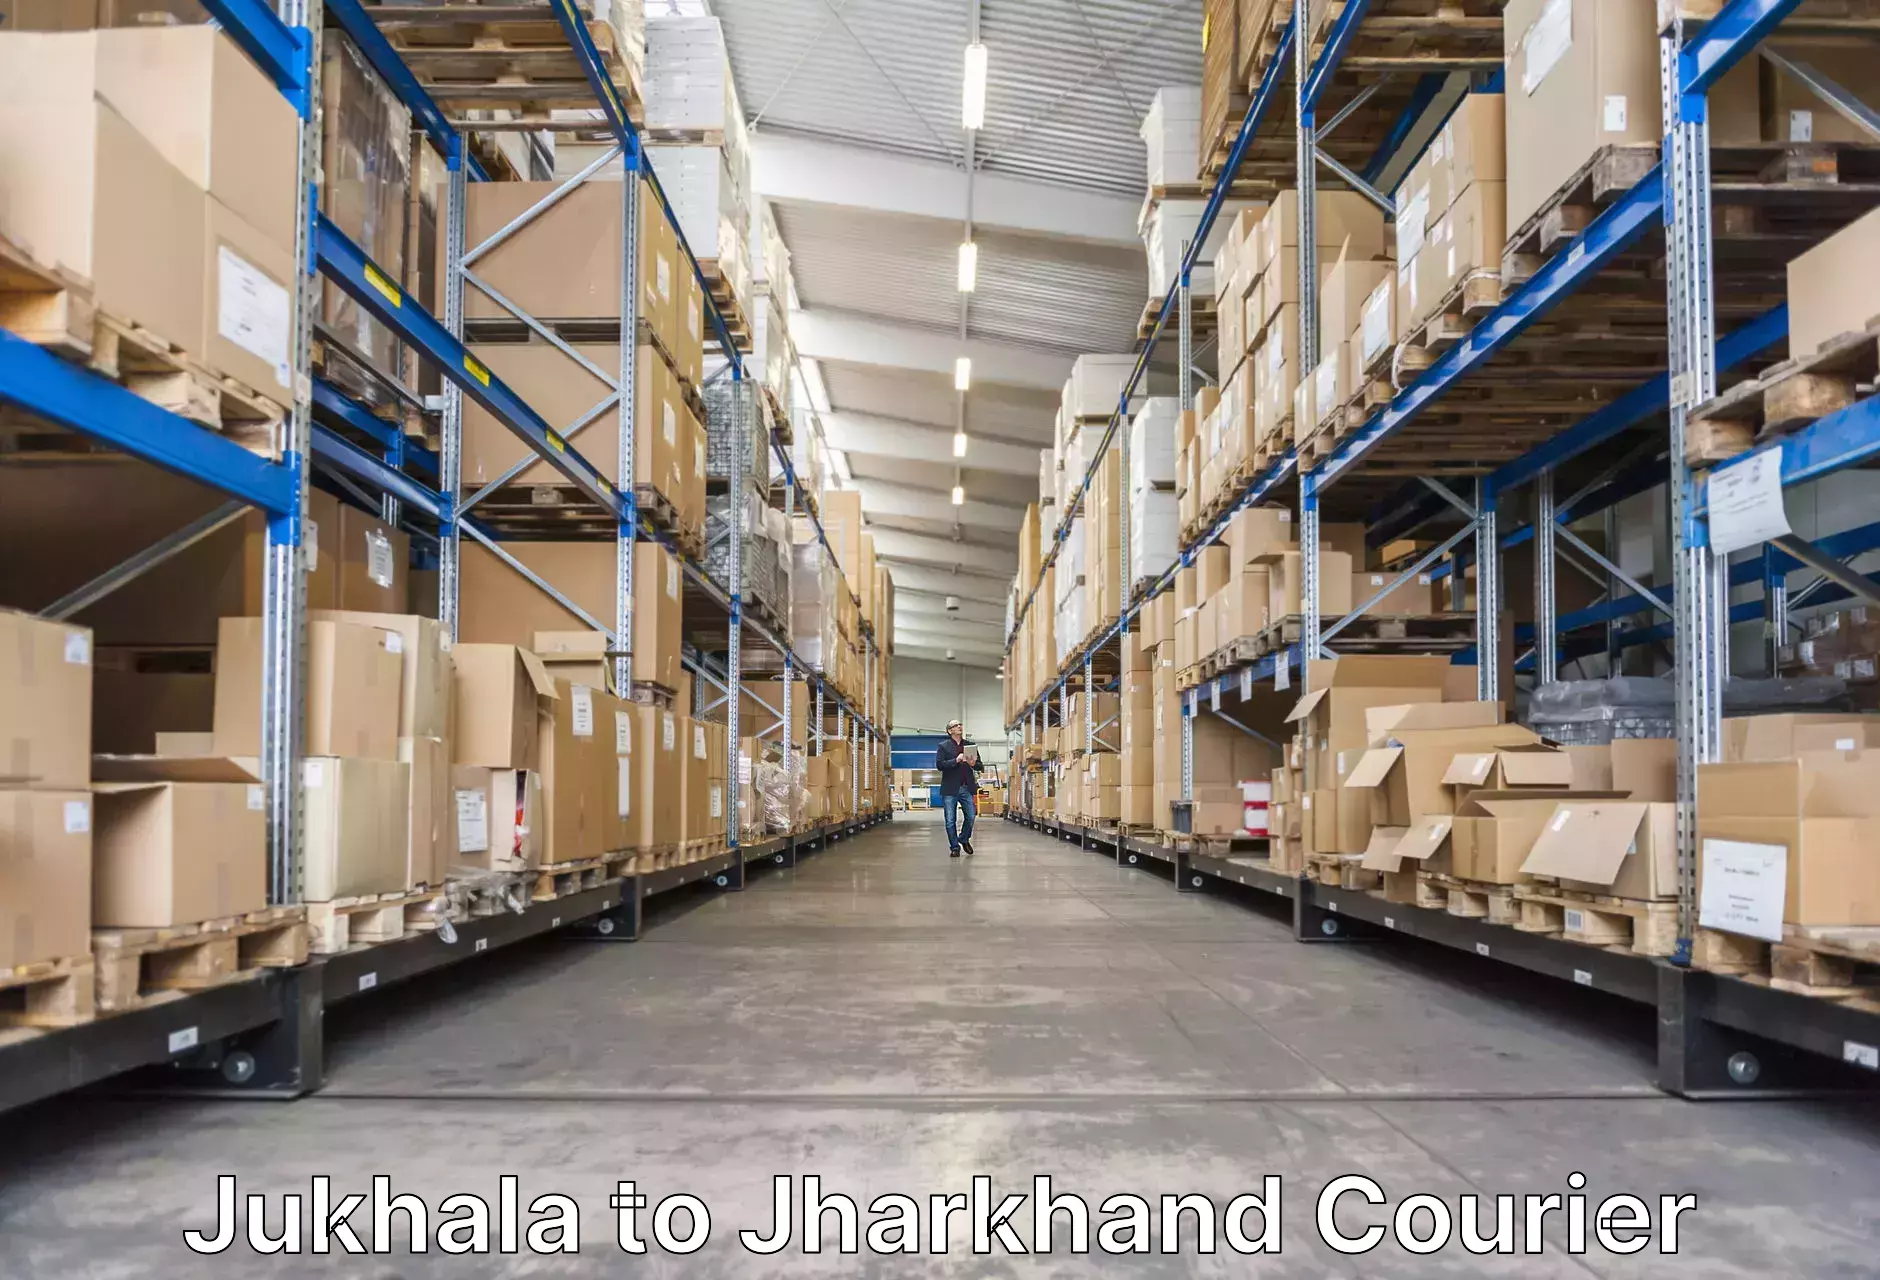 Luggage transport company Jukhala to Bokaro